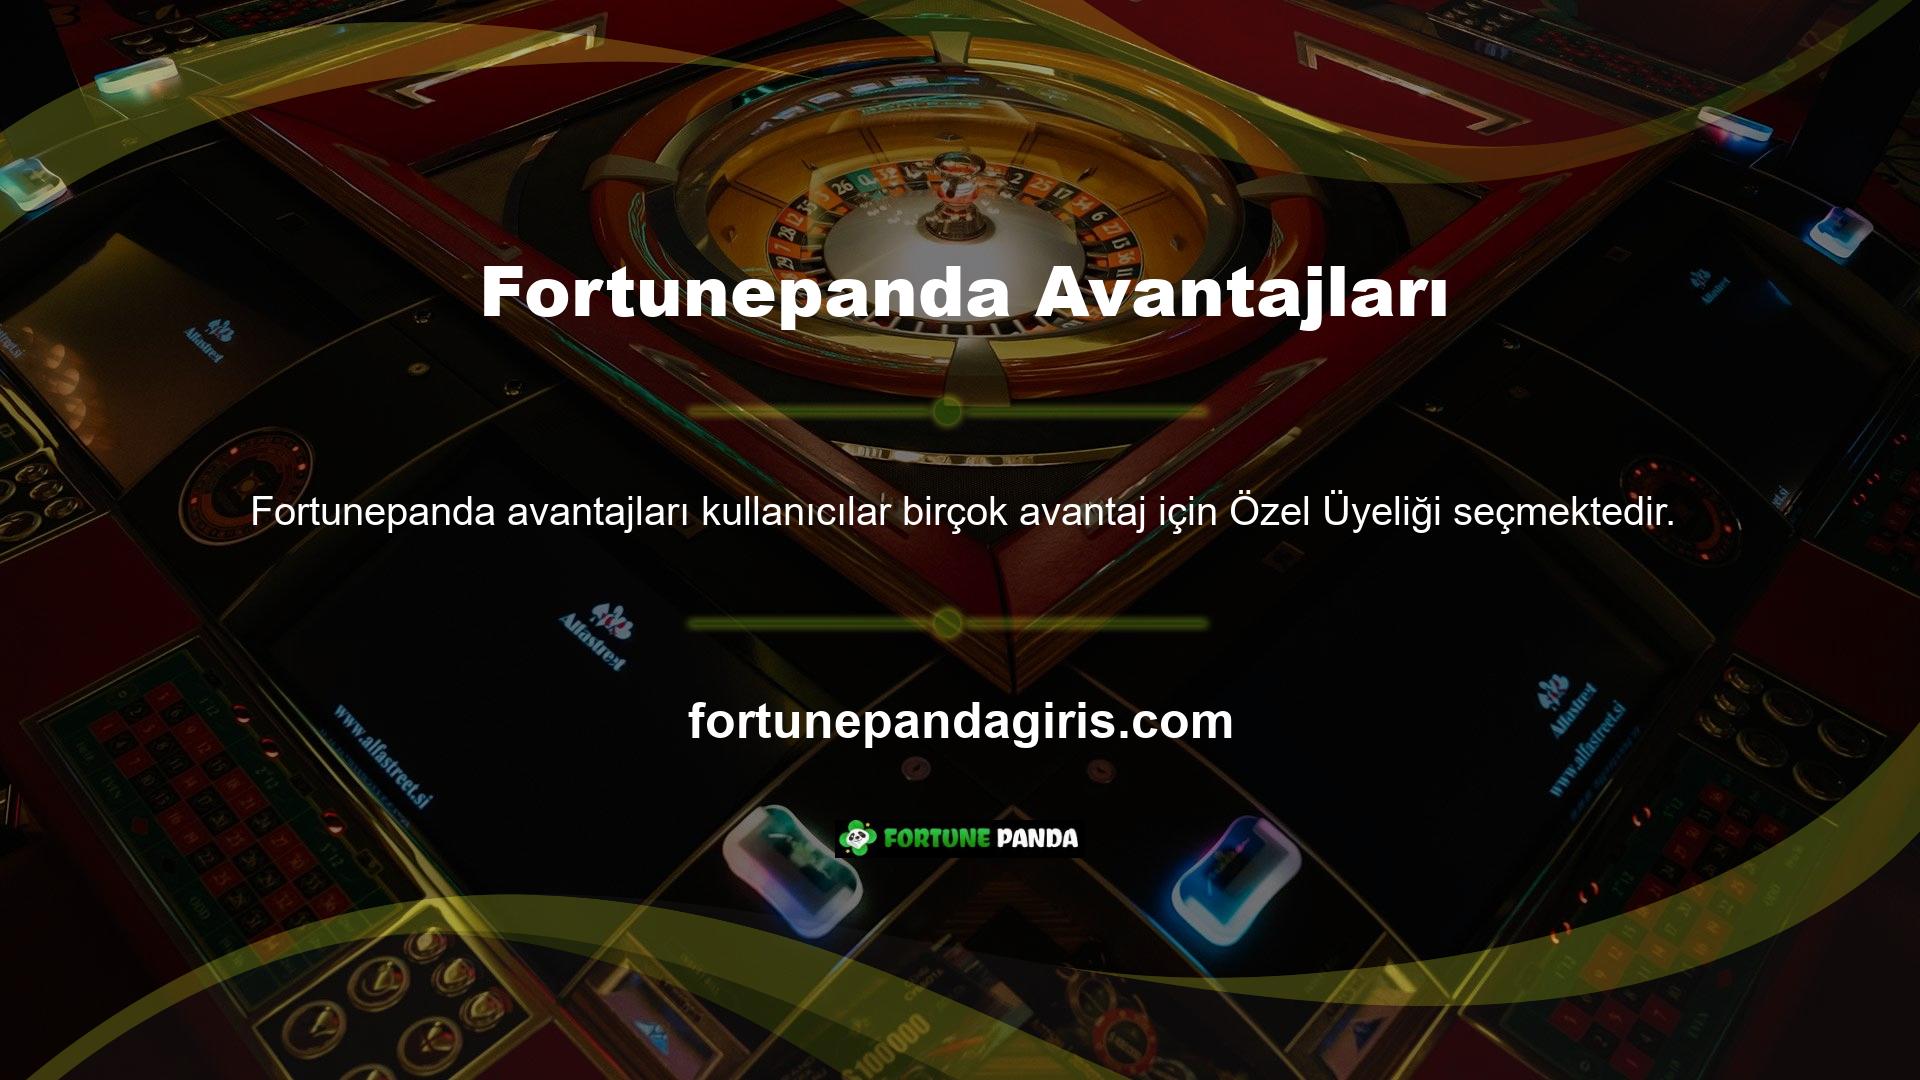 Fortunepanda VIP avantajlarına bonus avantajları da dahildir